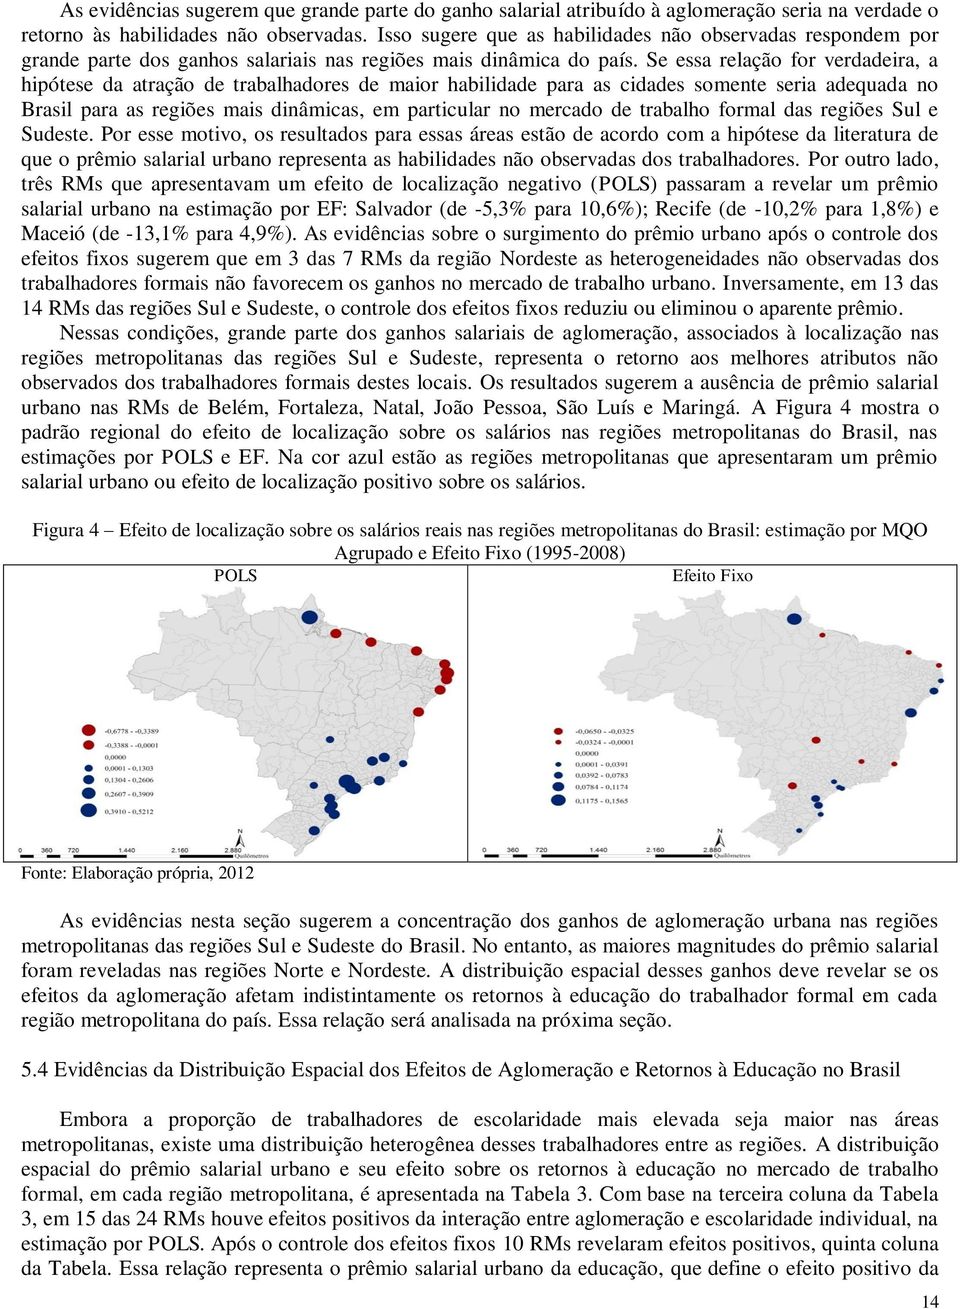 Se essa relação for verdadeira, a hipótese da atração de trabalhadores de maior habilidade para as cidades somente seria adequada no Brasil para as regiões mais dinâmicas, em particular no mercado de